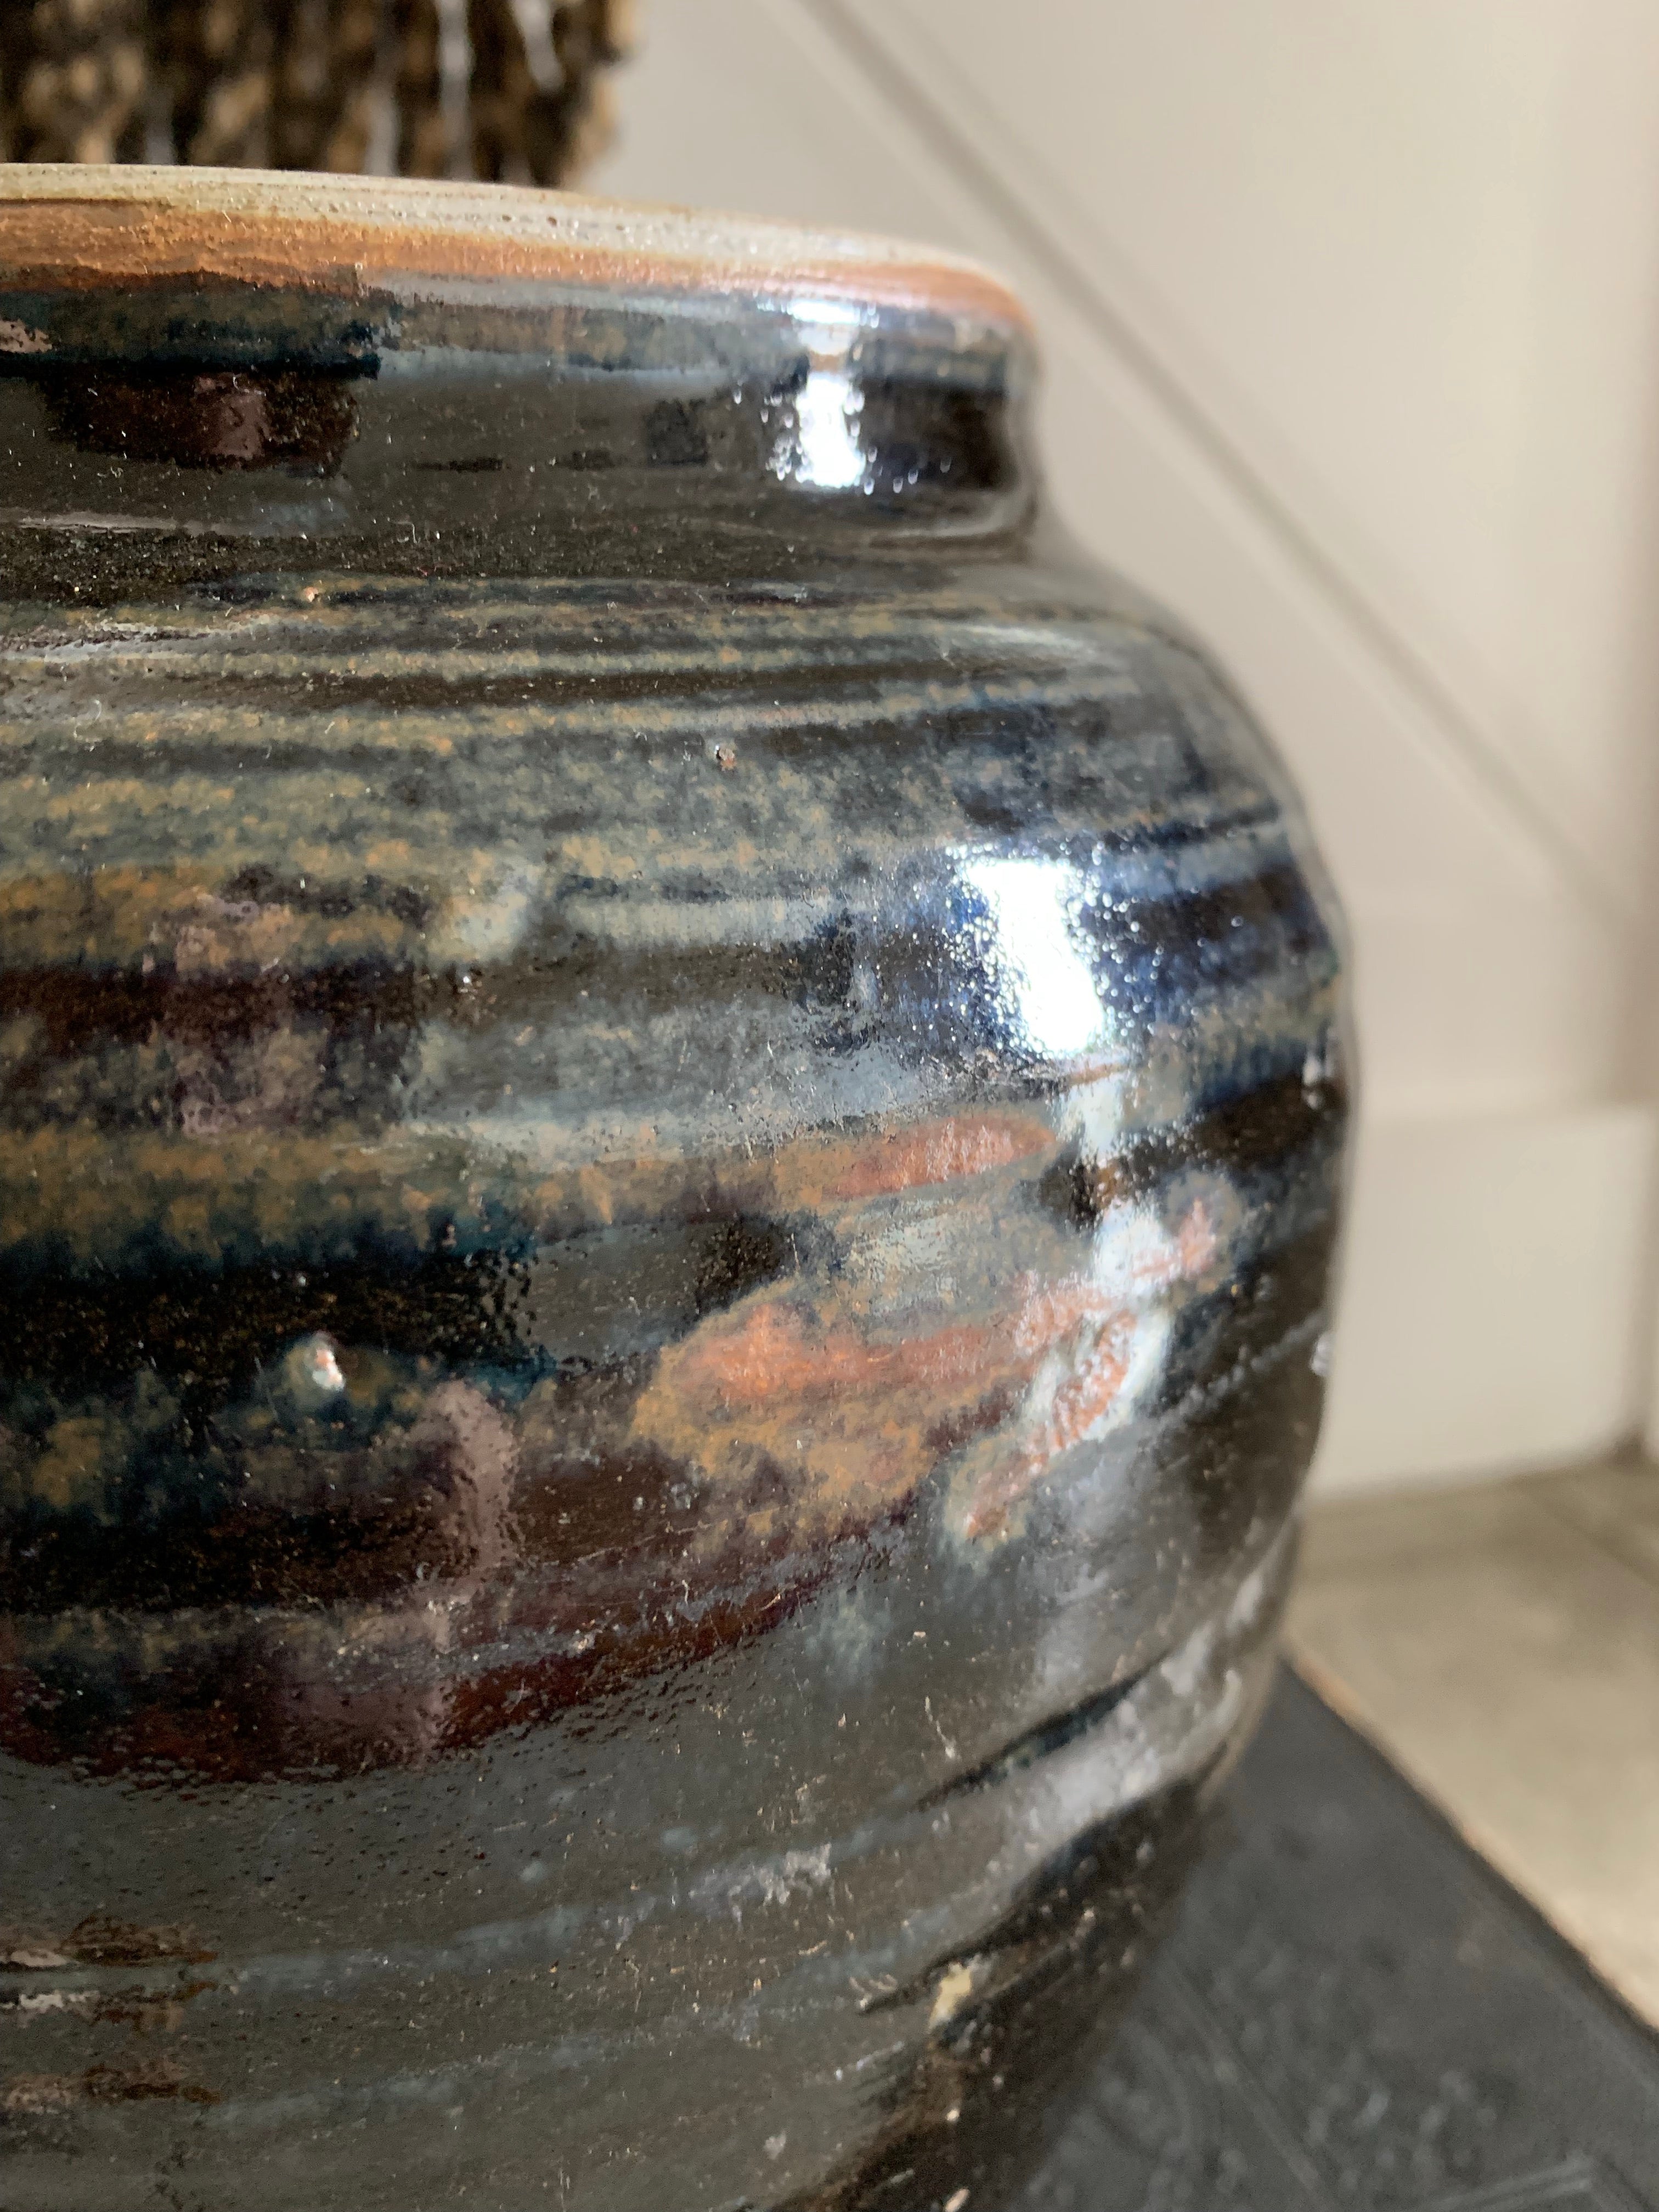 Large Handmade Black Glazed Chinese Pottery Jar